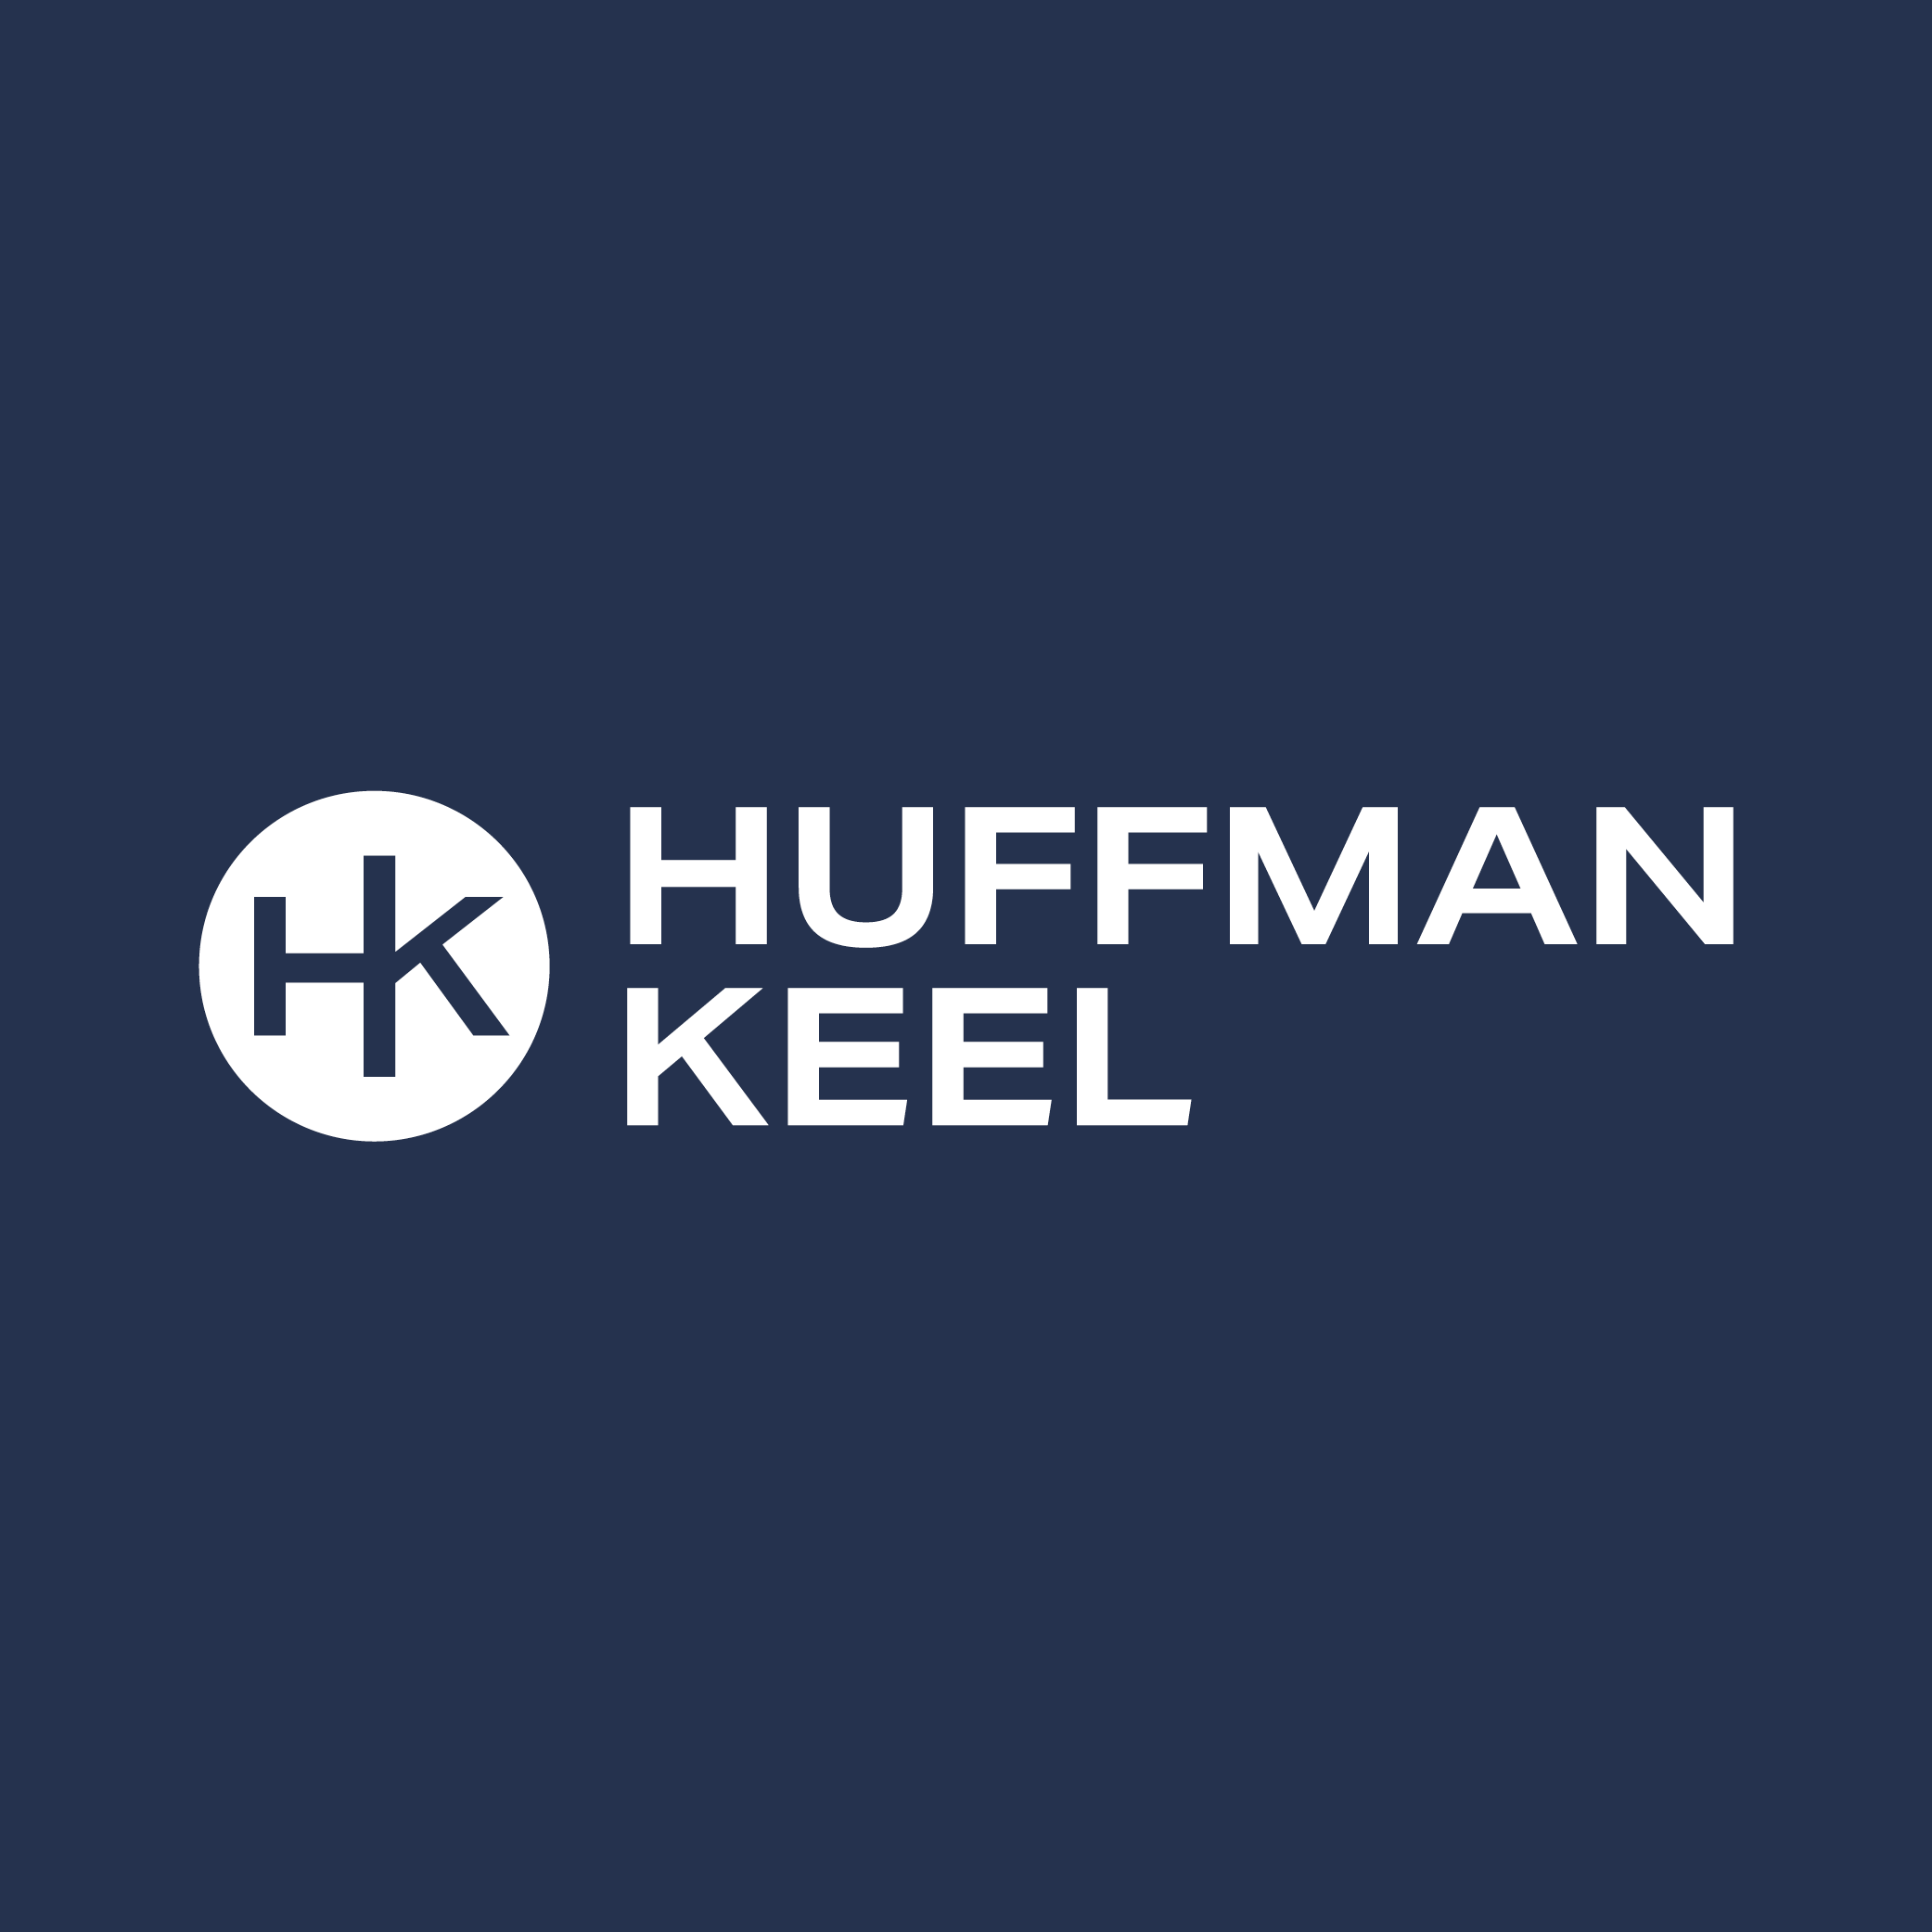 Huffman Keel logo